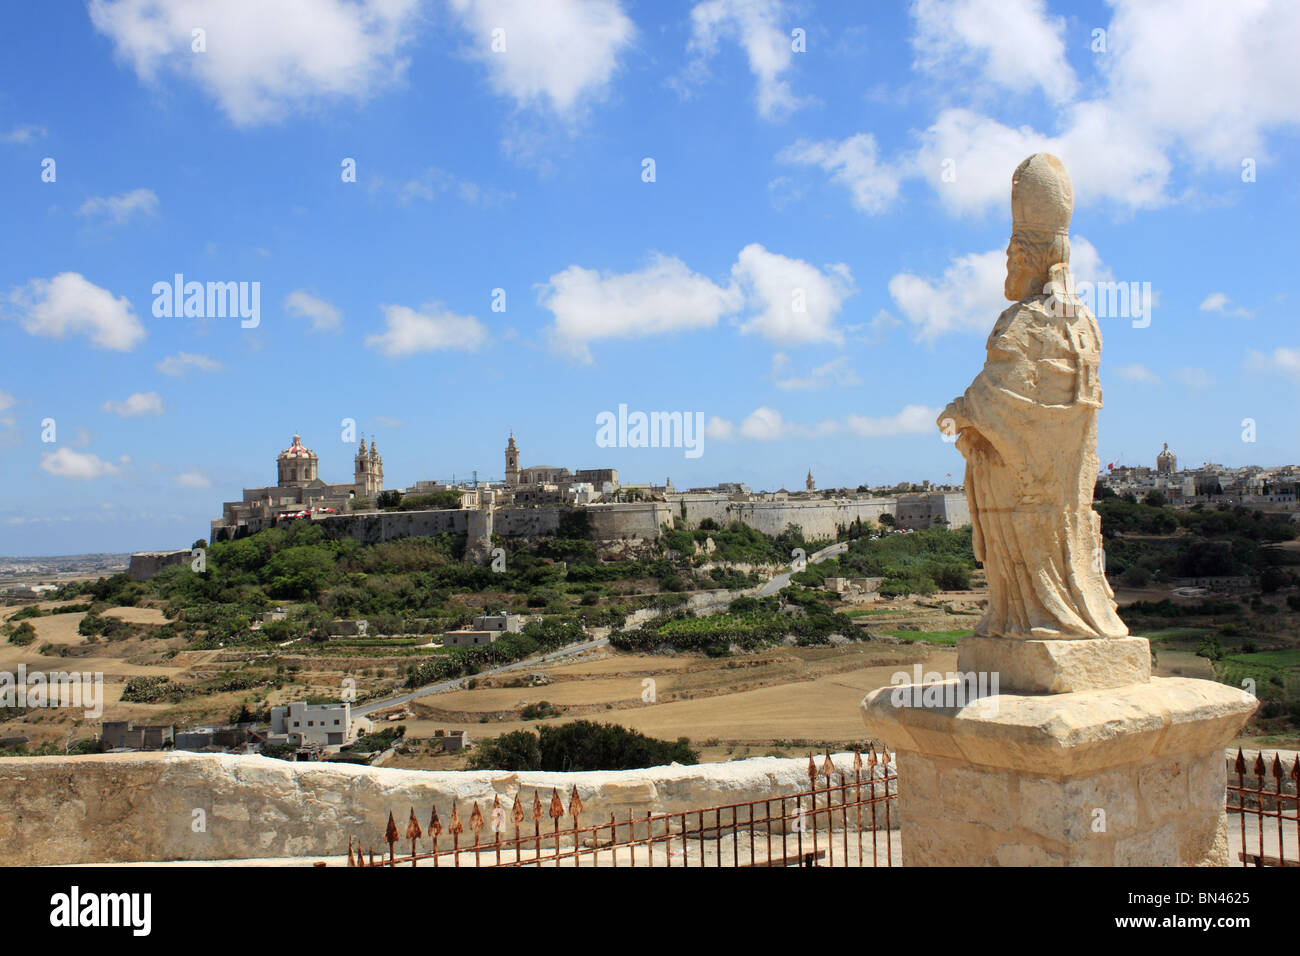 Ville fortifiée de Mdina (Citta Vecchia) de Mtarfa, montrant la Cathédrale St Paul (à gauche) et les jardins de thé de Fontanella (rouge/blanc parasols). central de Malte Banque D'Images